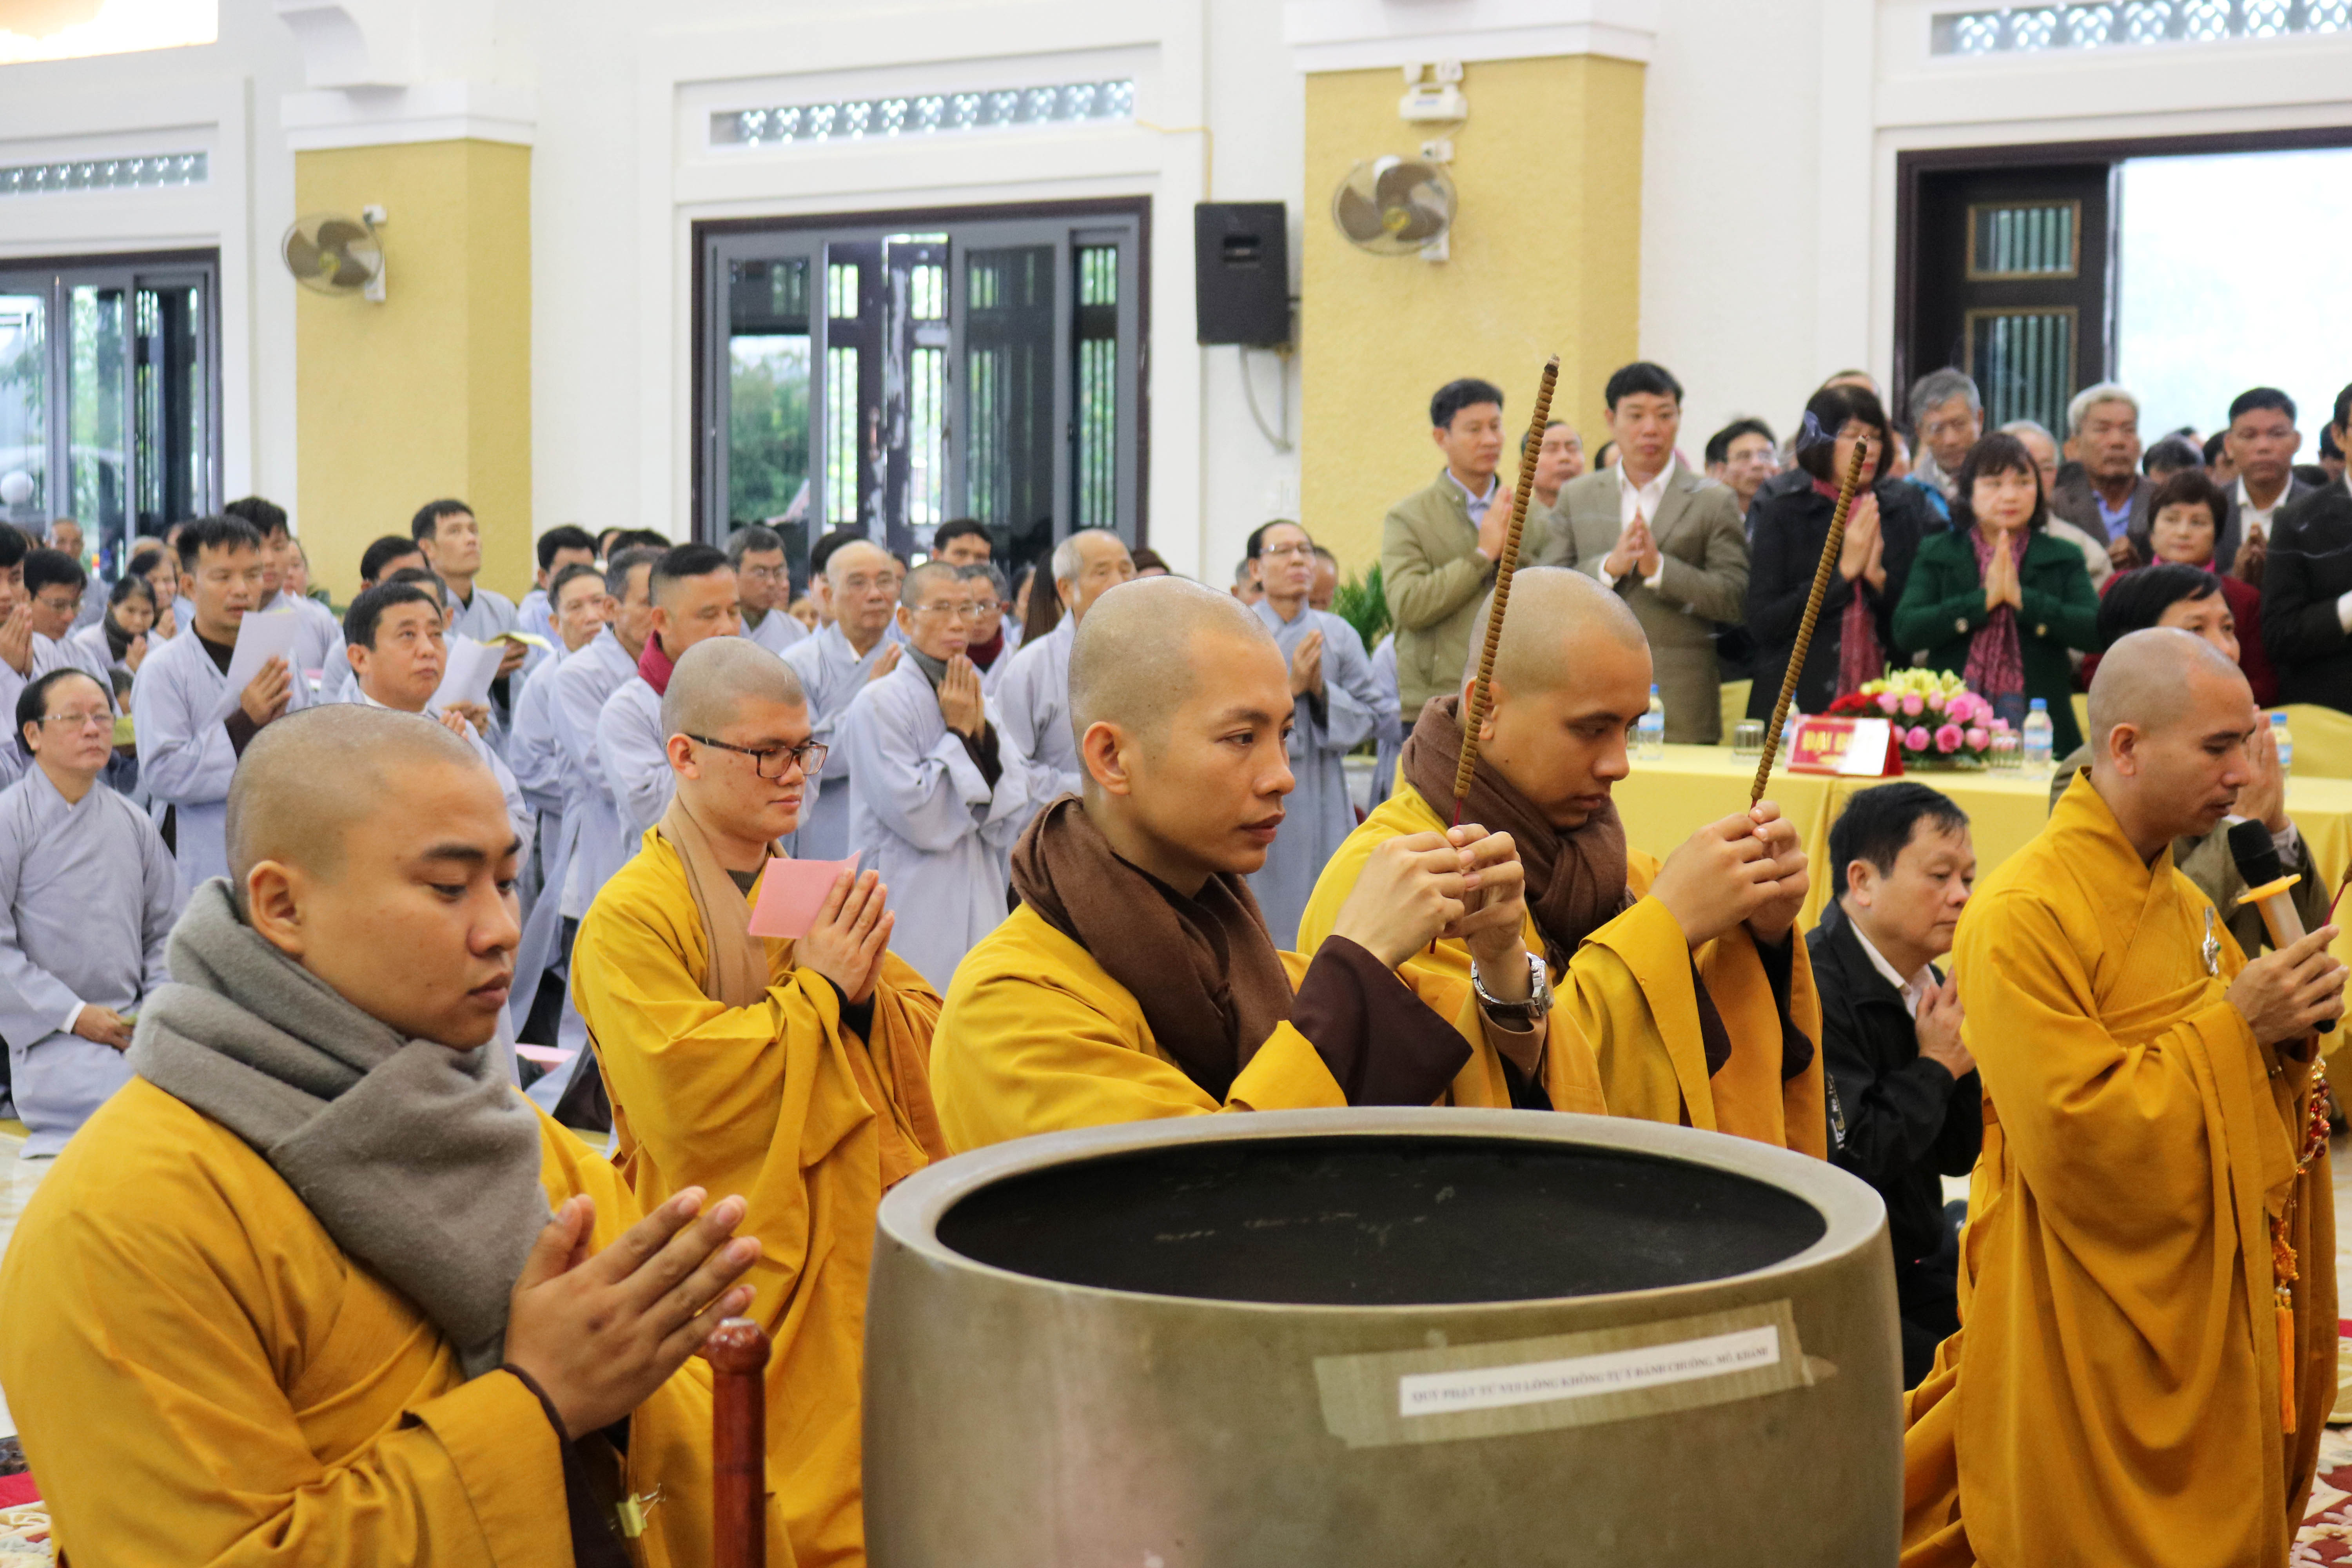 Đại lễ Phật Thành Đạo ở chùa Viên Quang năm nay diễn ra với nhiều hoạt động tâm linh và văn hóa như: văn nghệ, thuyết giảng, tọa thiền, tụng kinh Bát Chánh Đạo, tụng sám Thành đạo, Dâng hoa… 